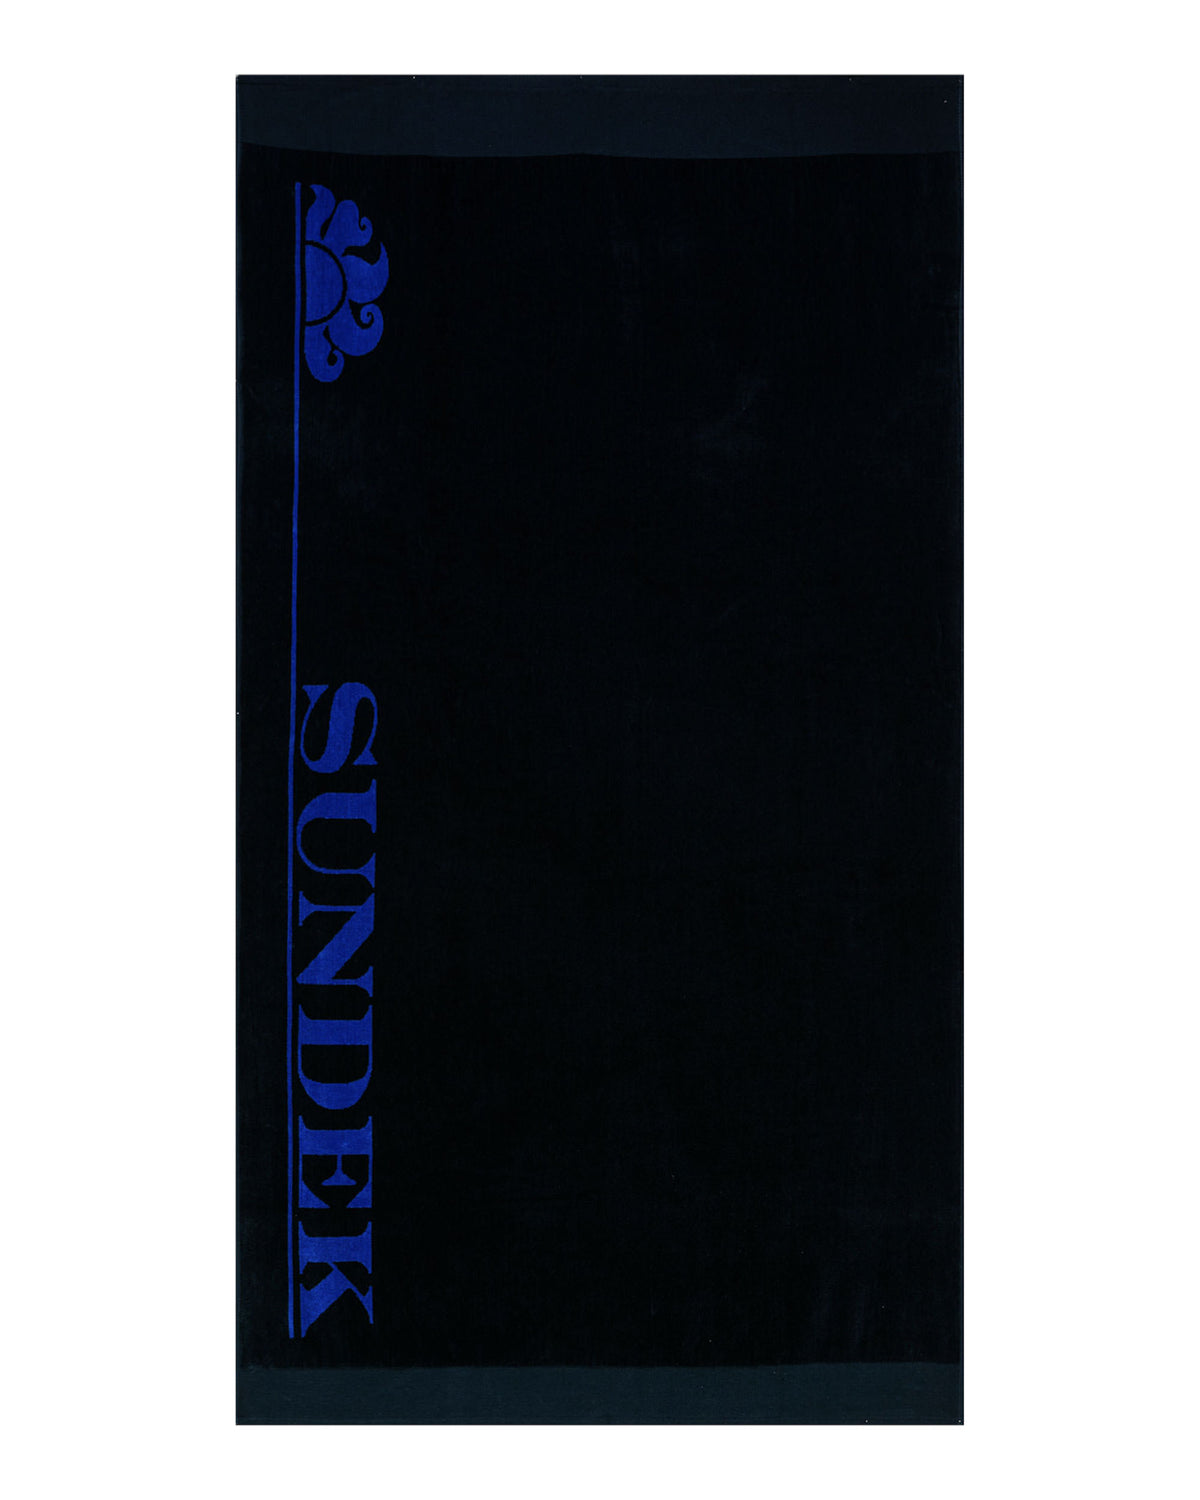 Telo Sundek Icon Towel Blu